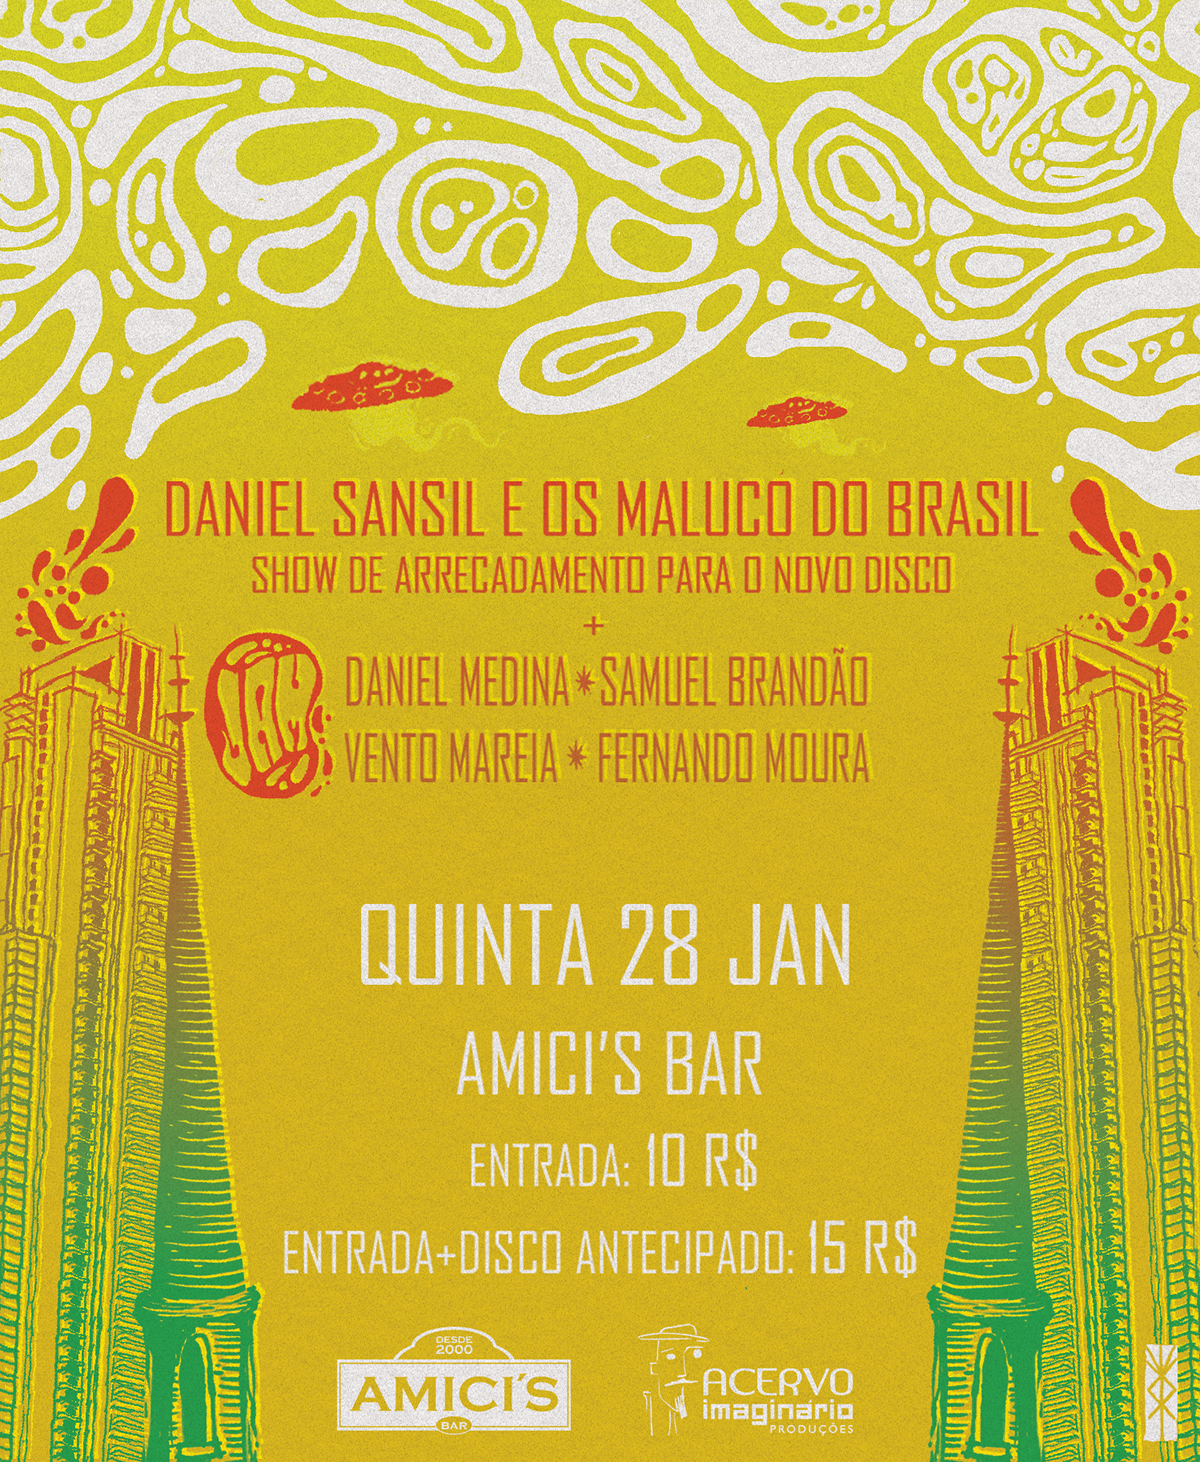 daniel sansil maluco do brasil yngvi igor gonçalves Cover Art psychedelic Psicodélico psicodelia 60s Poster Design